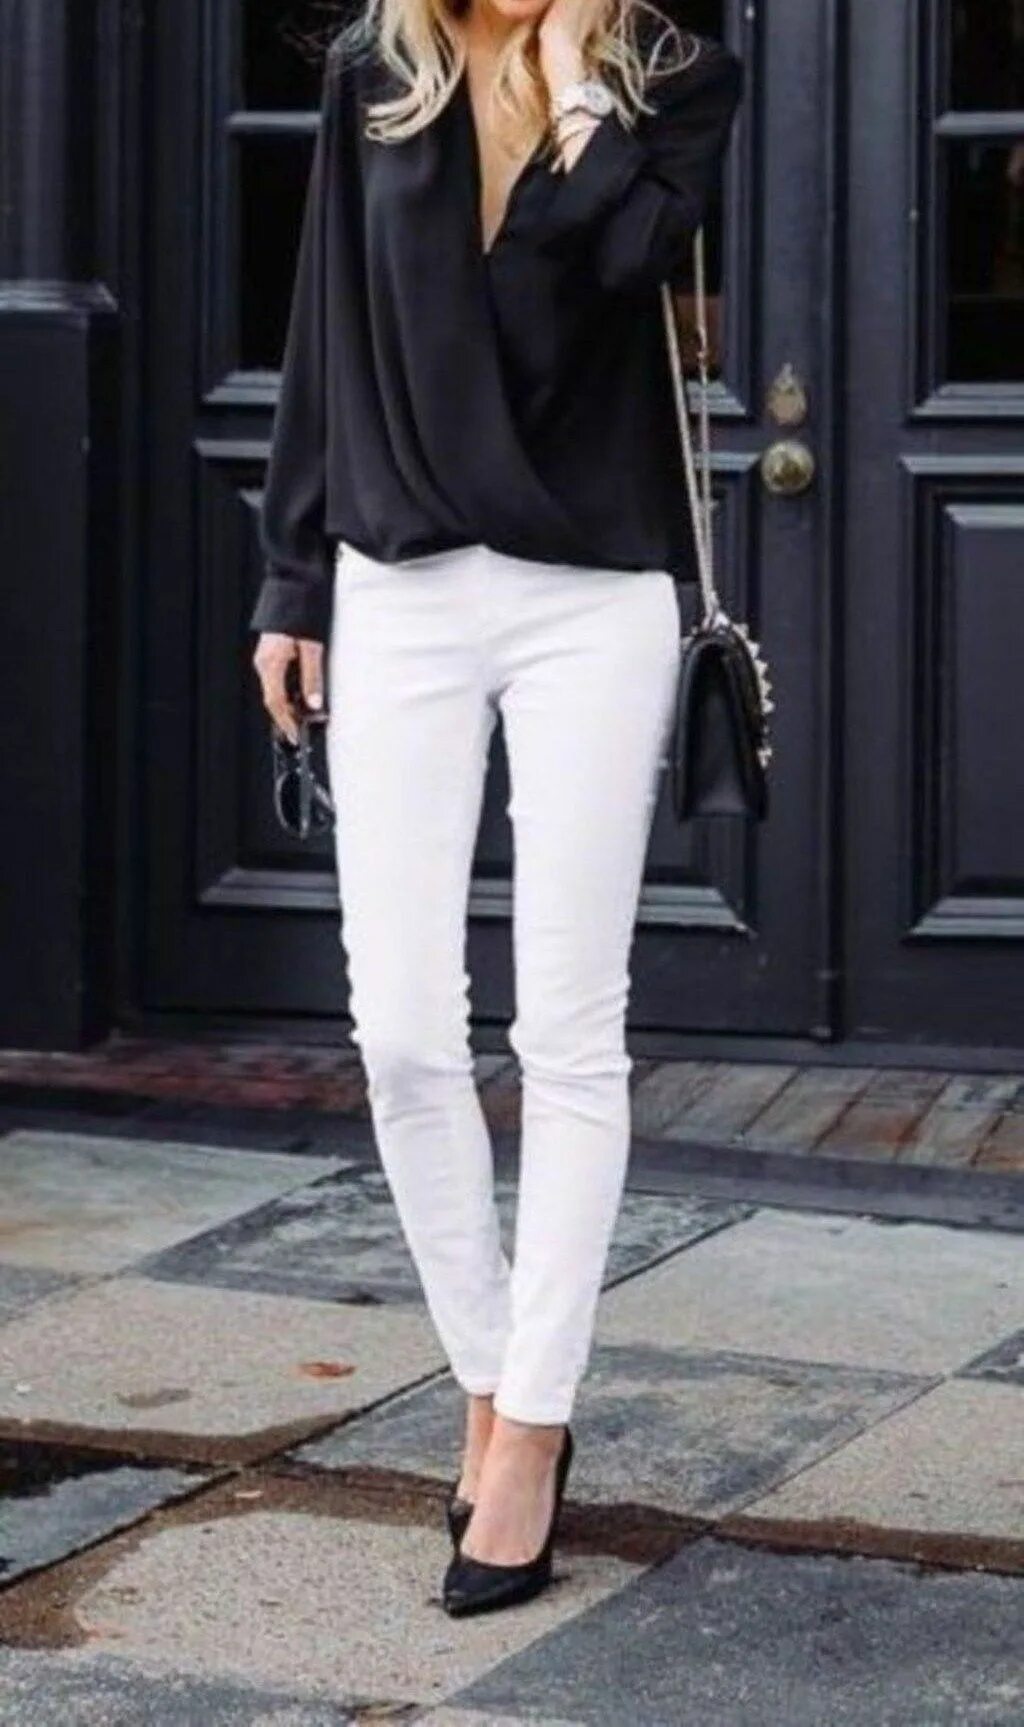 Белая кофта черные штаны. Стильные классические образы. Классический образ. Белая блузка и черные брюки. Белая рубашка и черные джинсы.